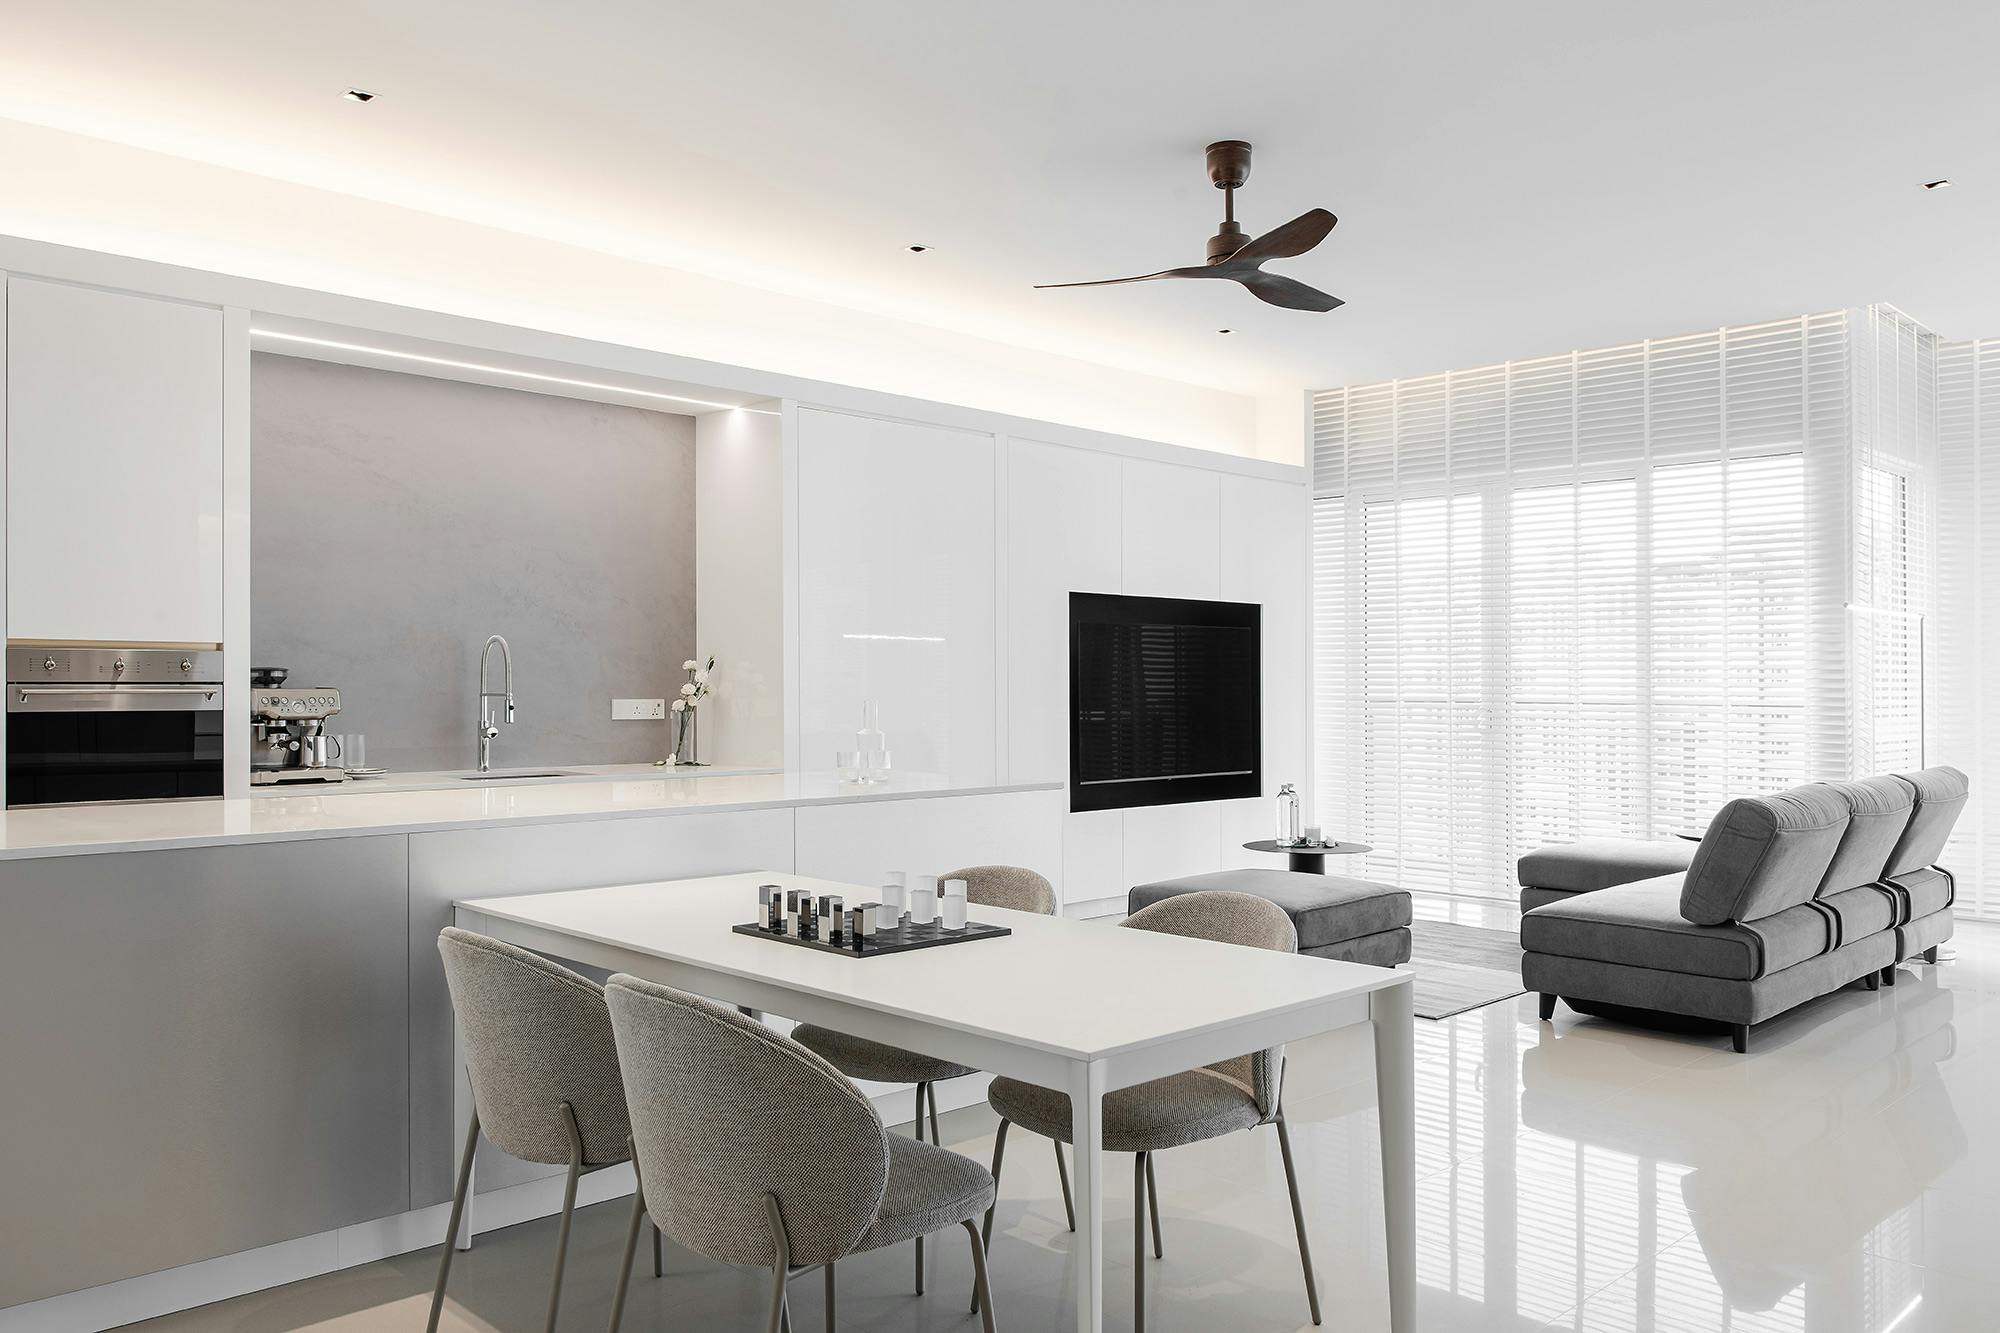 Imagen número 85 de Un apartamento de diseño italiano consigue integrar con elegancia cocina y comedor gracias a Dekton